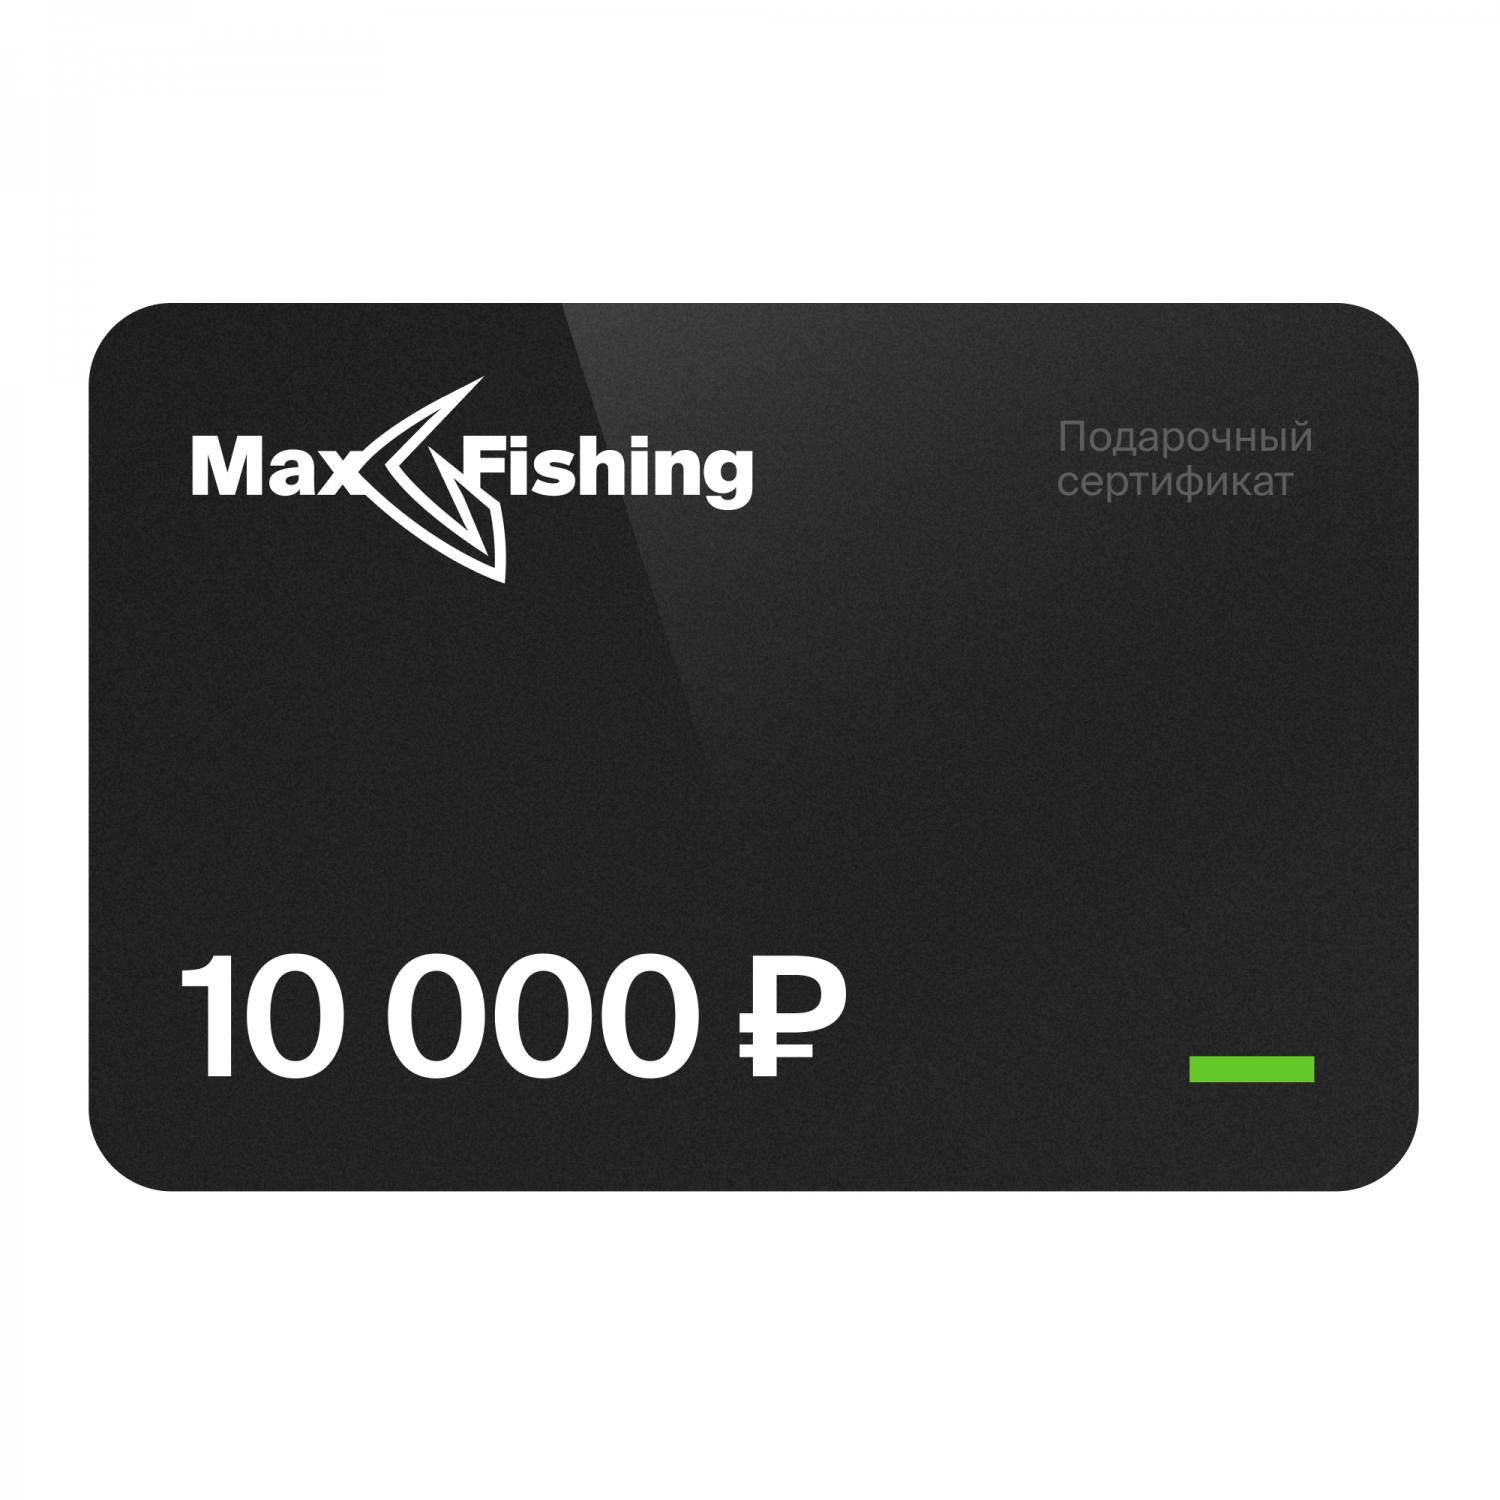 Подарочный сертификат MaxFishing 10 000 ₽ подарочный сертификат на 50 000 рублей